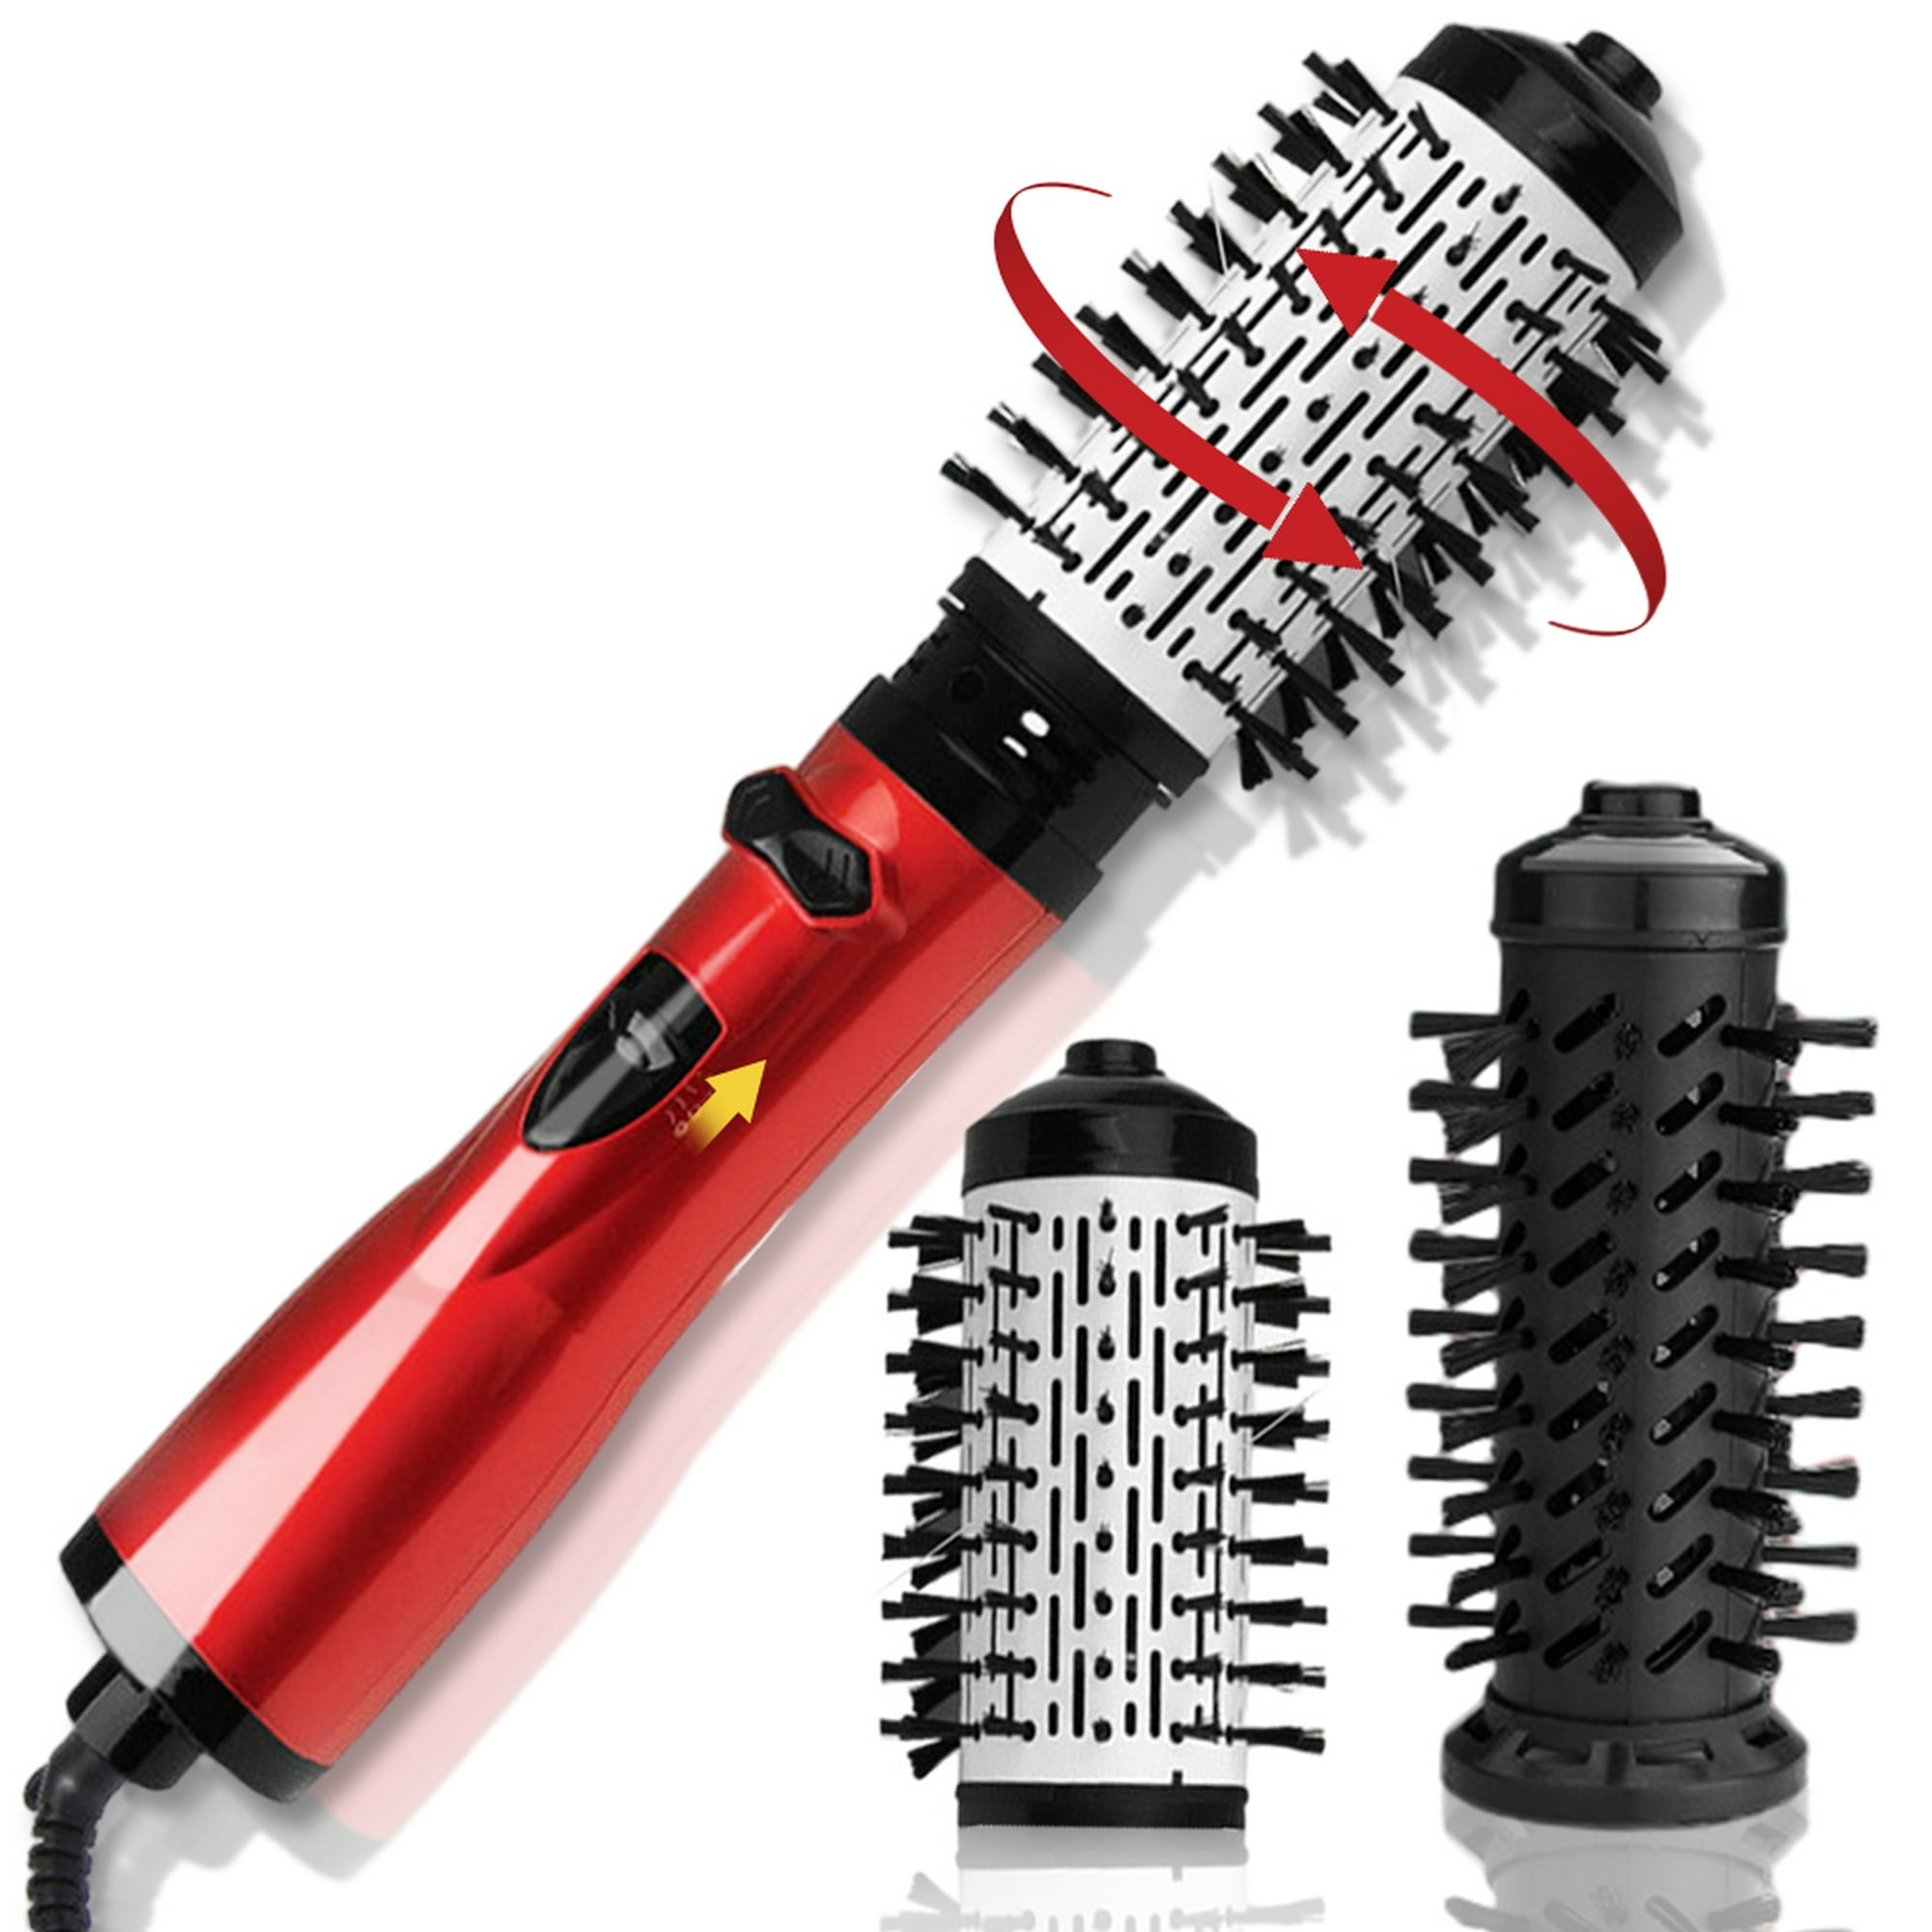 Porta - Cepillo alisador de pelo inalámbrico con 3 temperaturas, cepillo  alisador de cabello 2 en 1 y rizador, cepillo alisador de pelo portátil